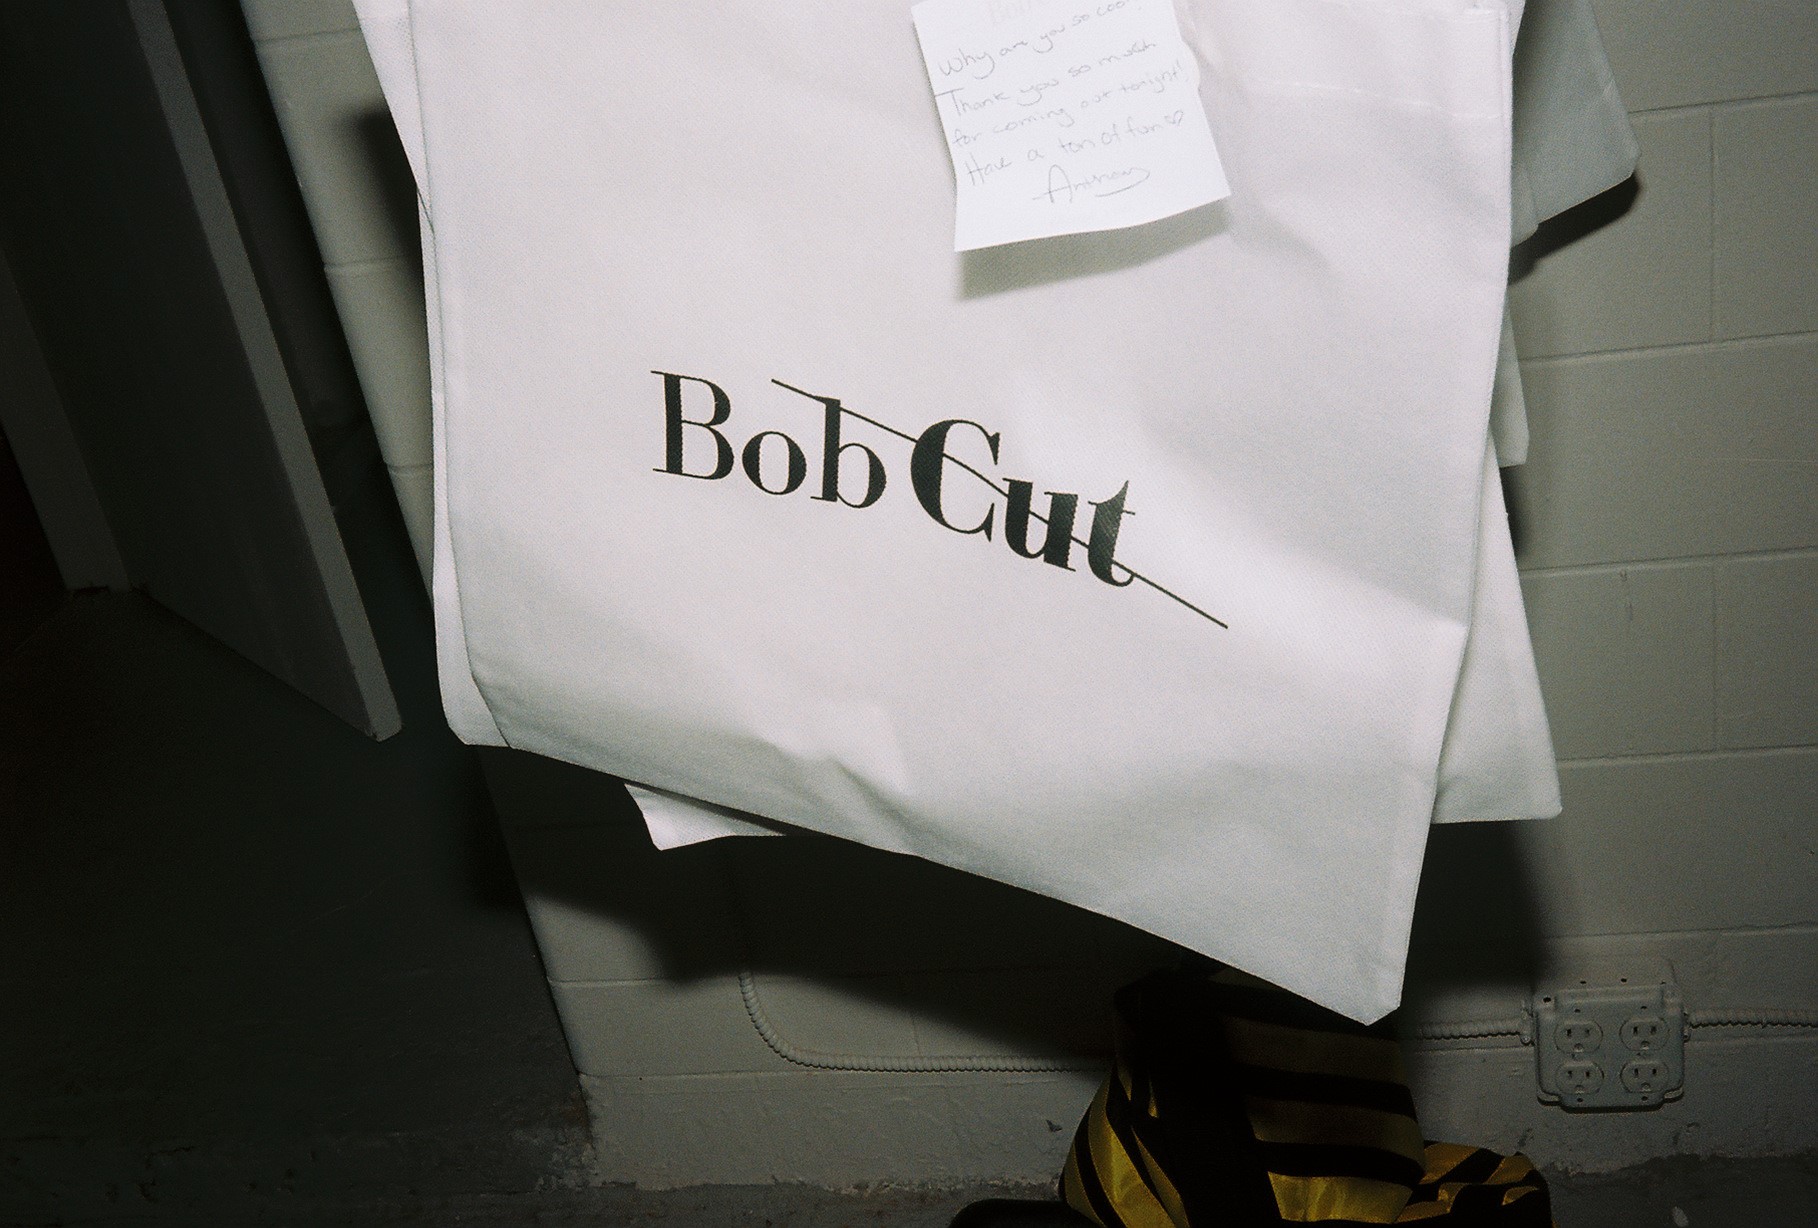 BobCut Magazine; Image Courtesy of Anthony Rogers